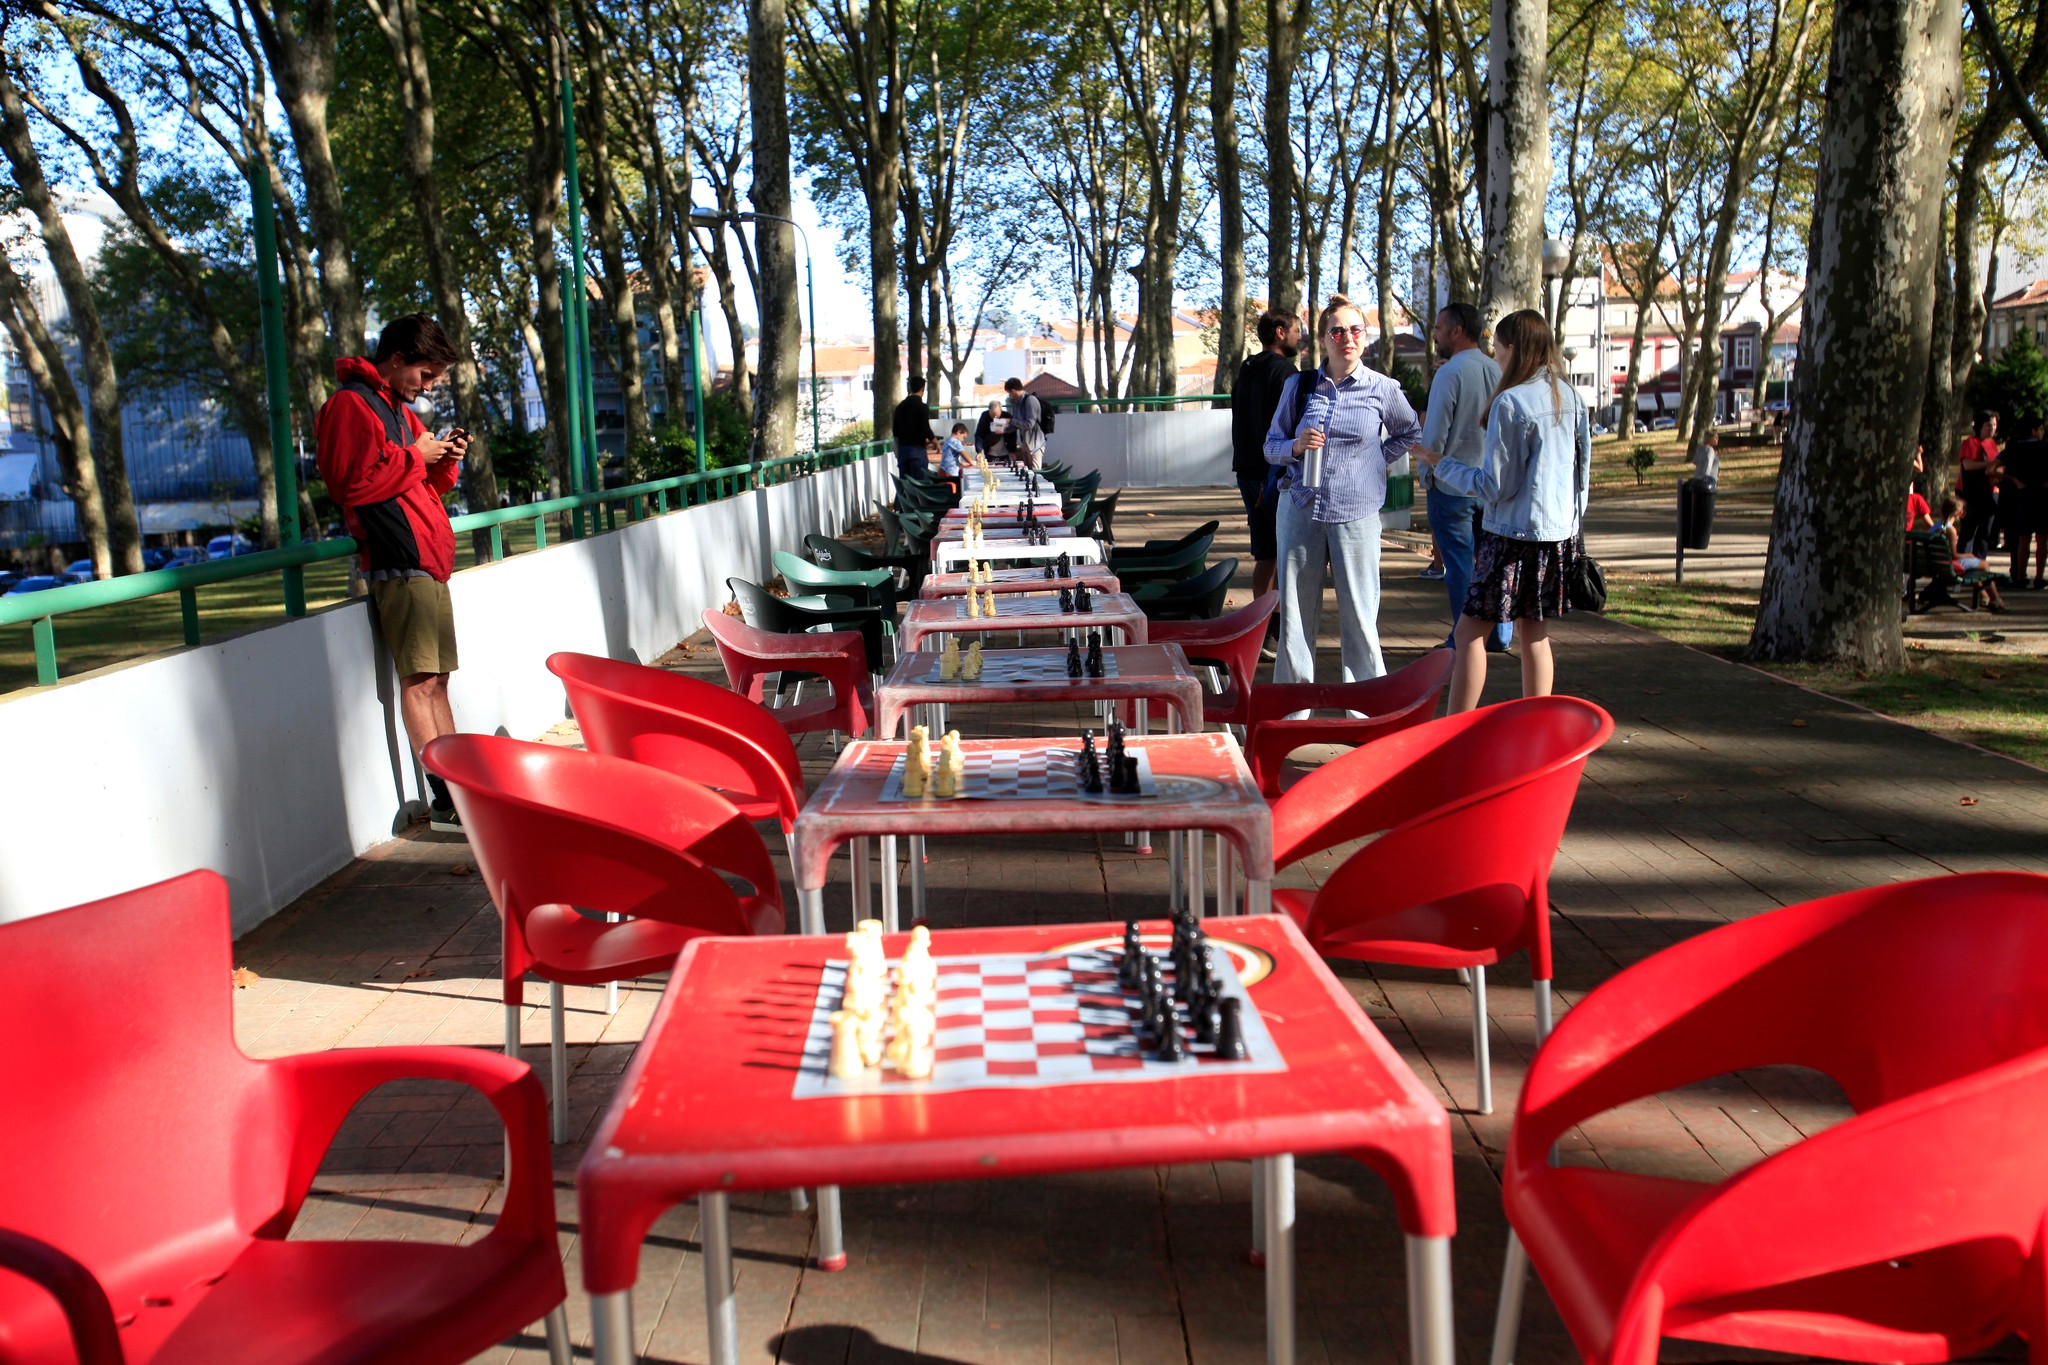 Clube de xadrez de Porto Alegre realiza torneio em homenagem a